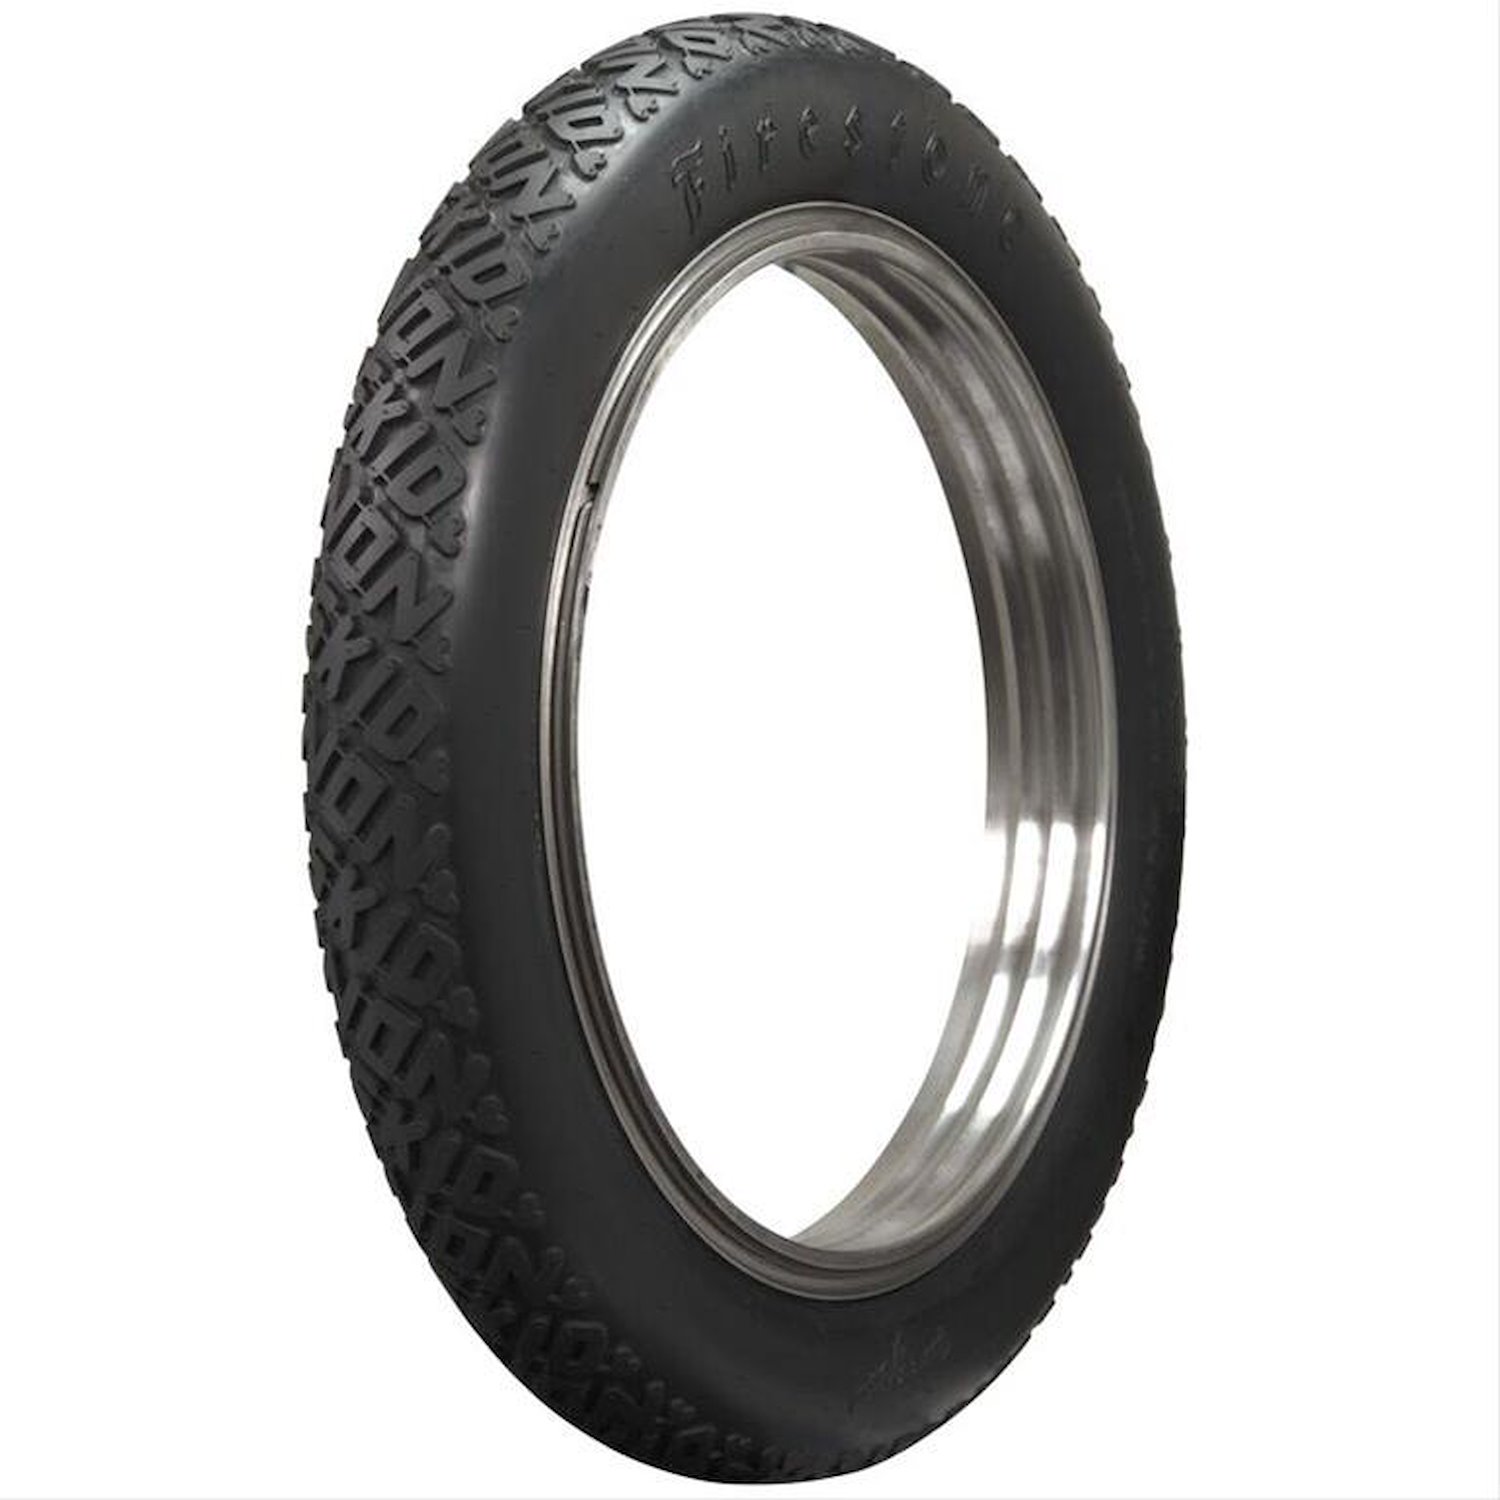 805985 Tire, Firestone Non-Skid, All Black, 32x4